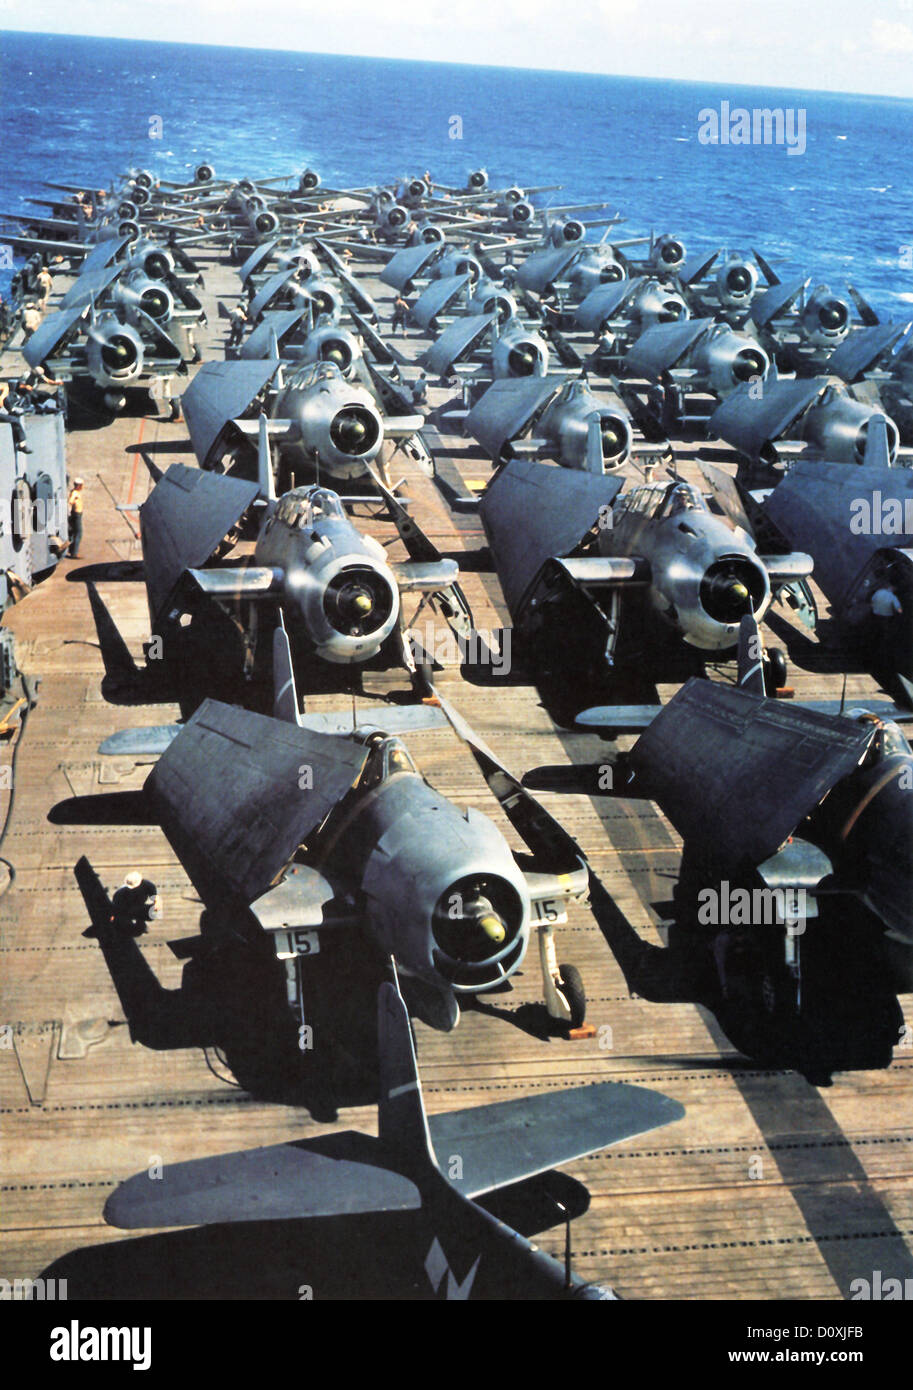 USS Yorktown, aeronaves navales, Grumman F6F-3 Hellcat, aviones, baraja, portaaviones, el Pacífico, el ejército, la II Guerra Mundial, 19 de noviembre Foto de stock